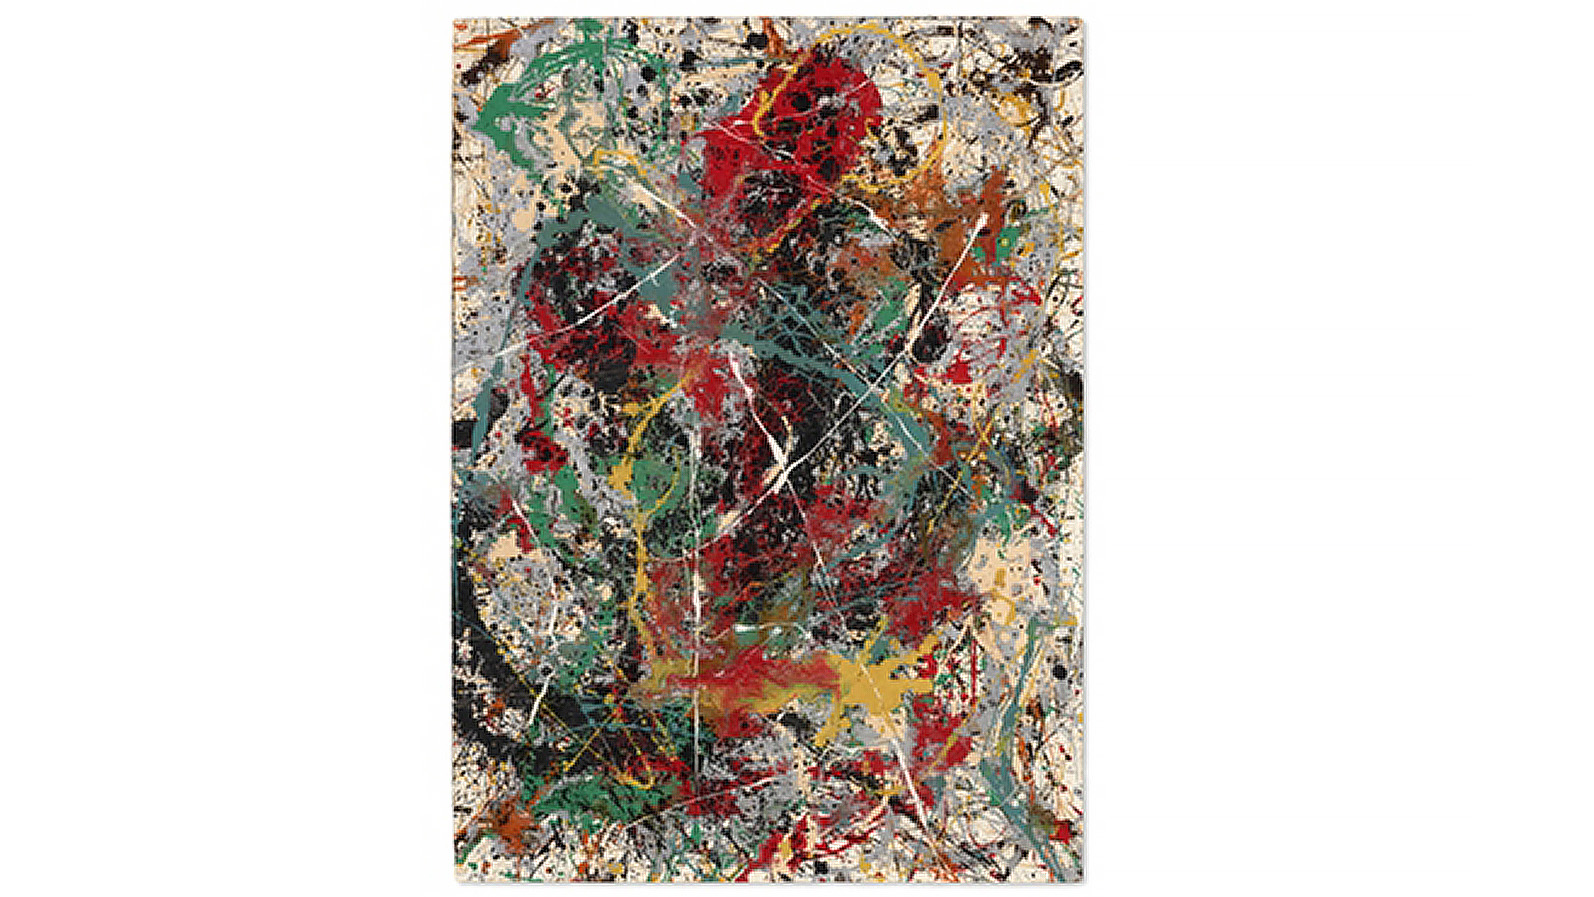 Tranh trừu tượng Number 31 của Pollock